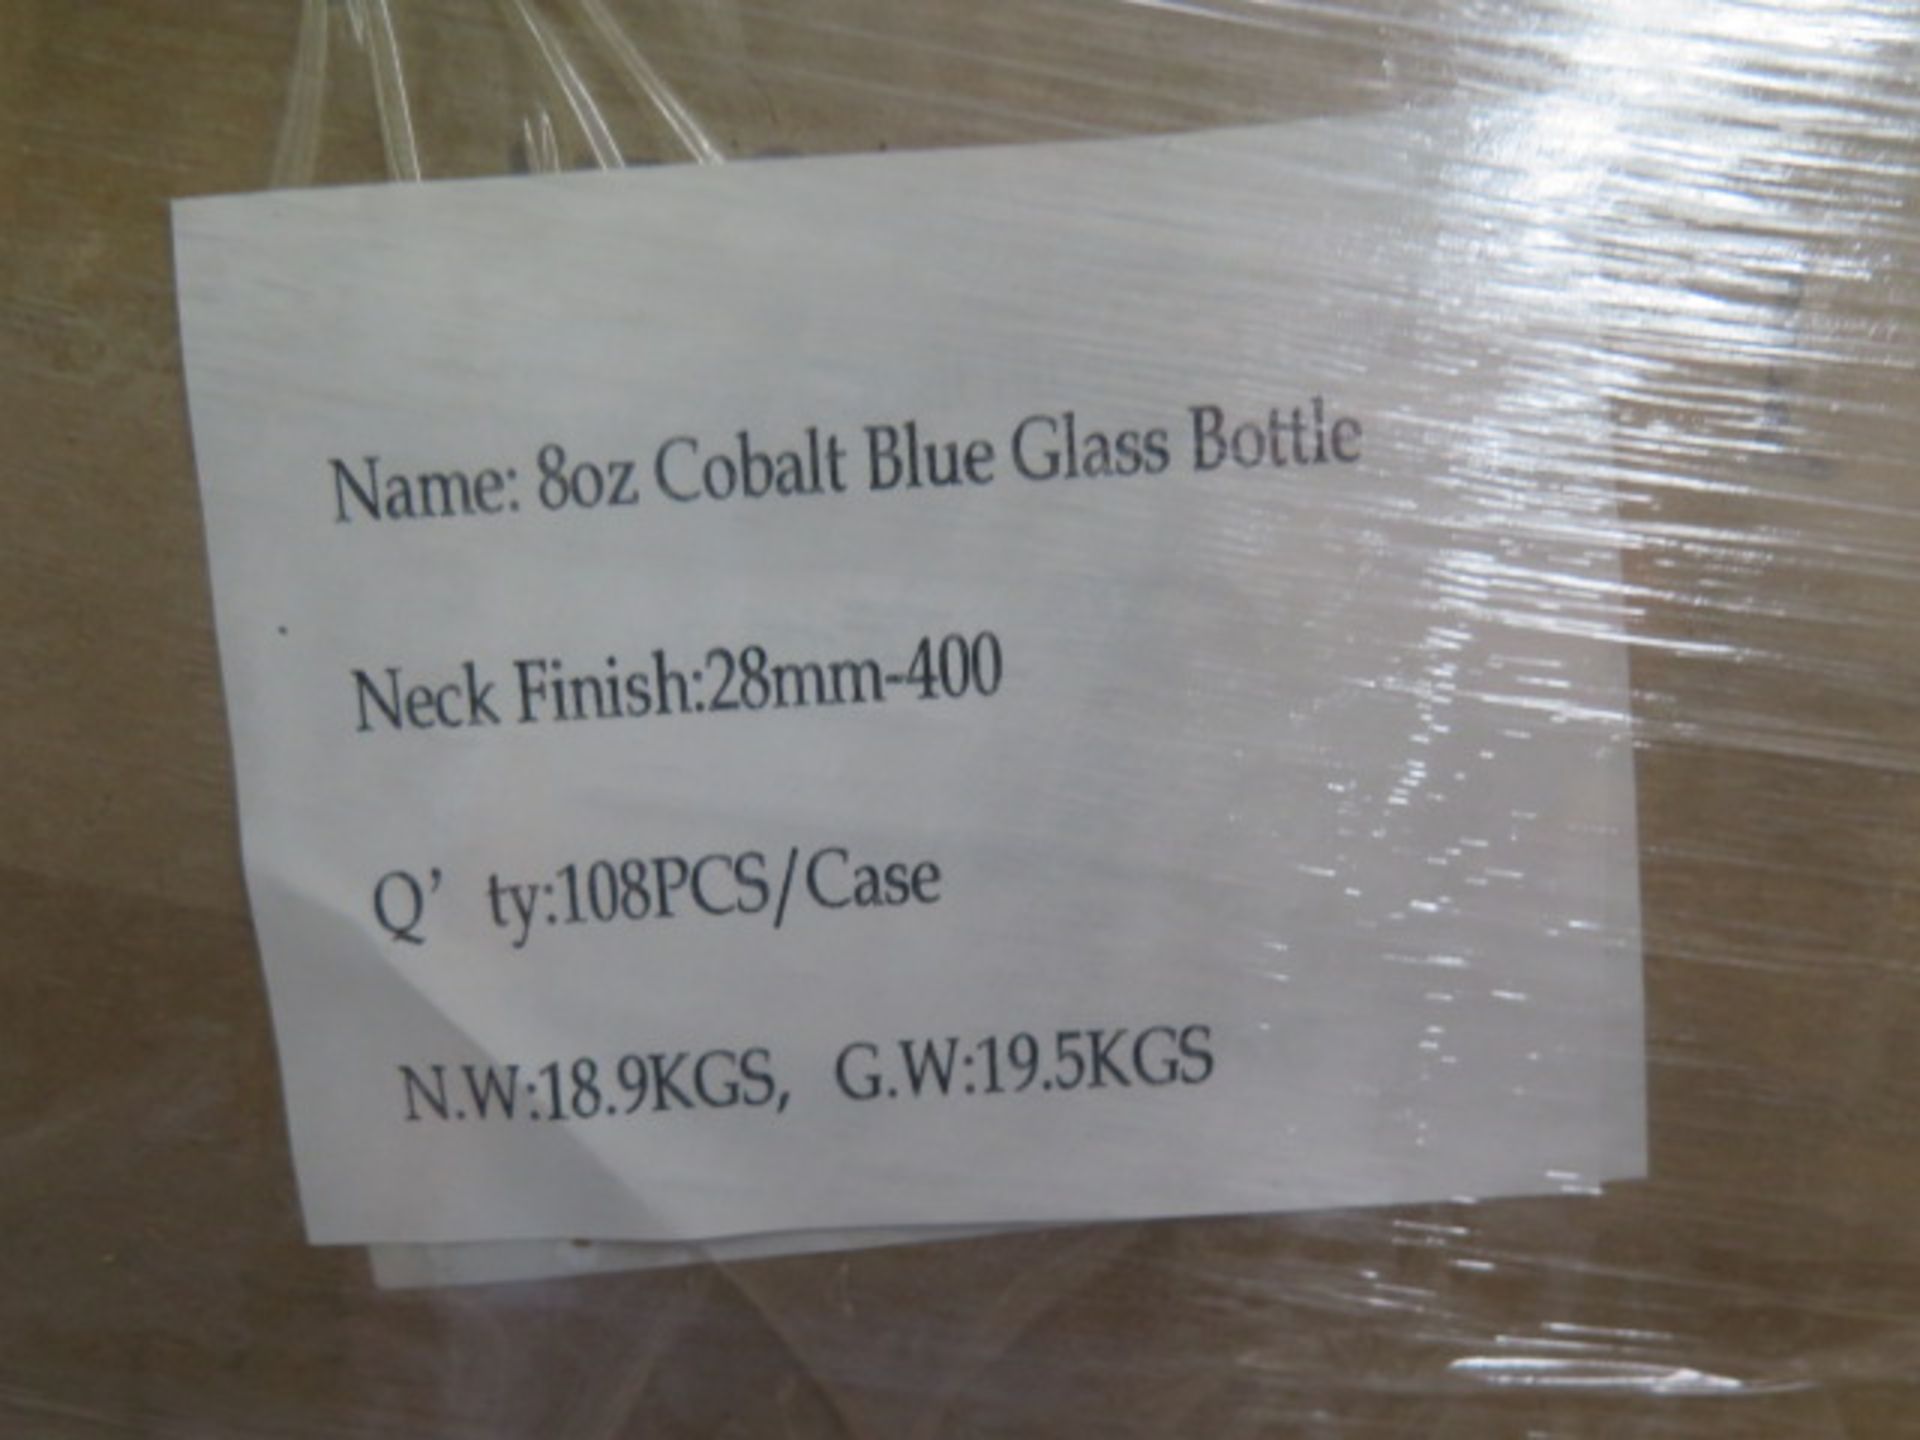 150cc Amber Glass Bottles (Approx 3200), 8oz Cobalt Blue Glass Bottles (Approx 3400), SOLD AS IS - Image 10 of 10